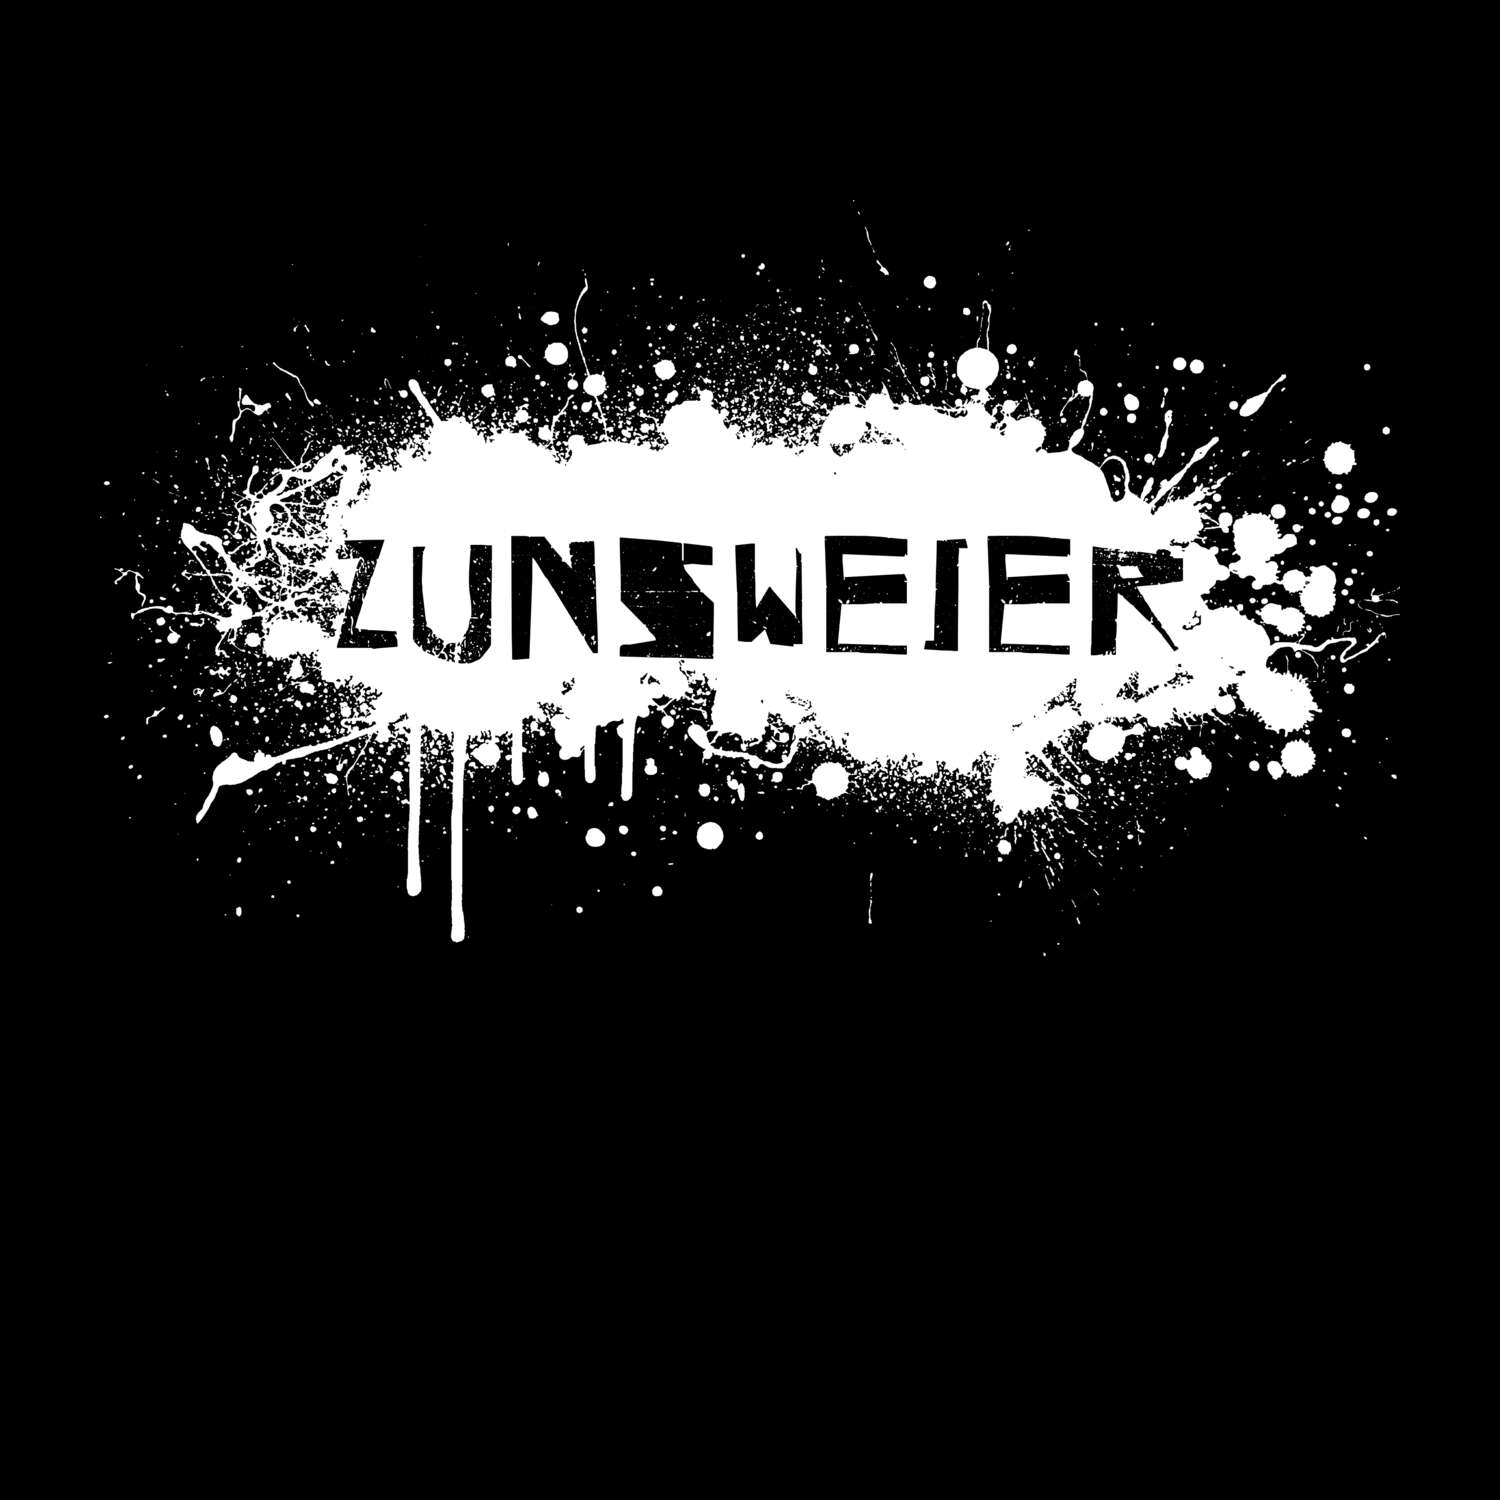 Zunsweier T-Shirt »Paint Splash Punk«